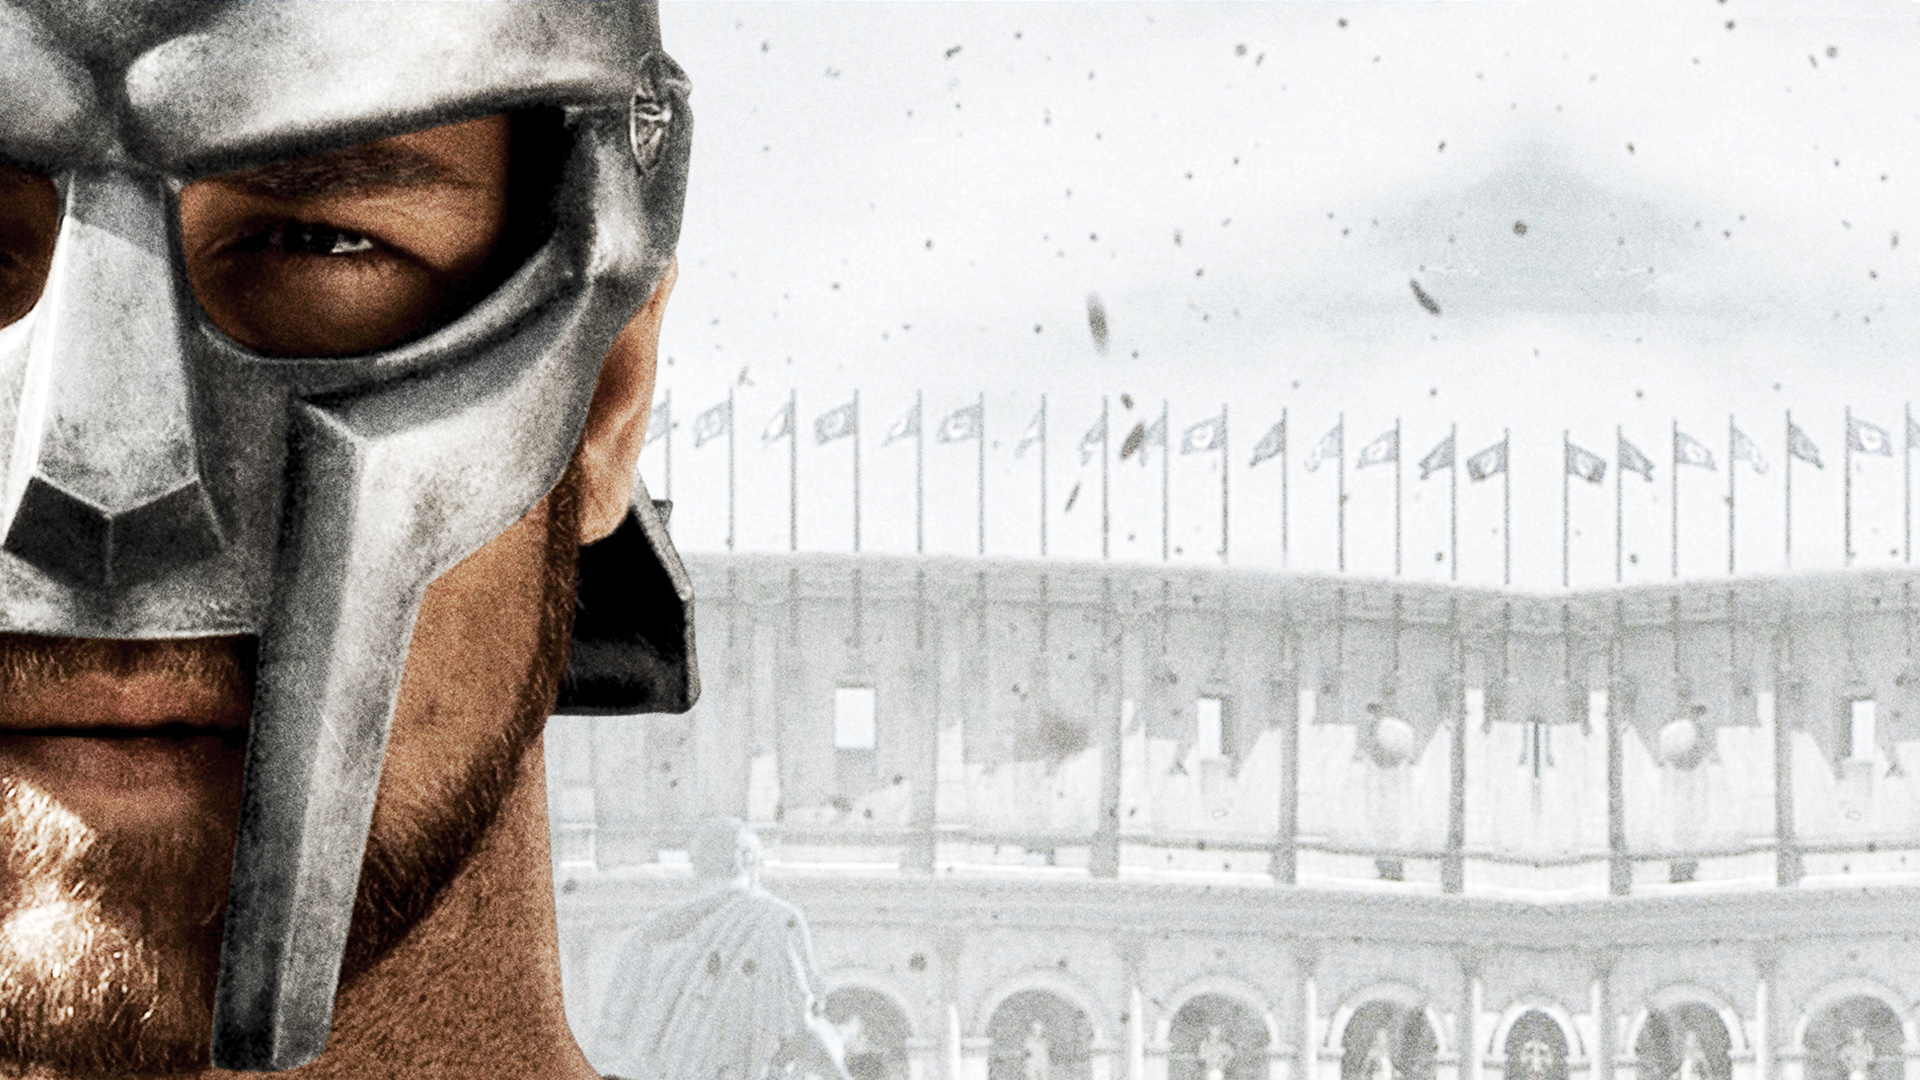 Gladiator Warrior F Wallpaper Background